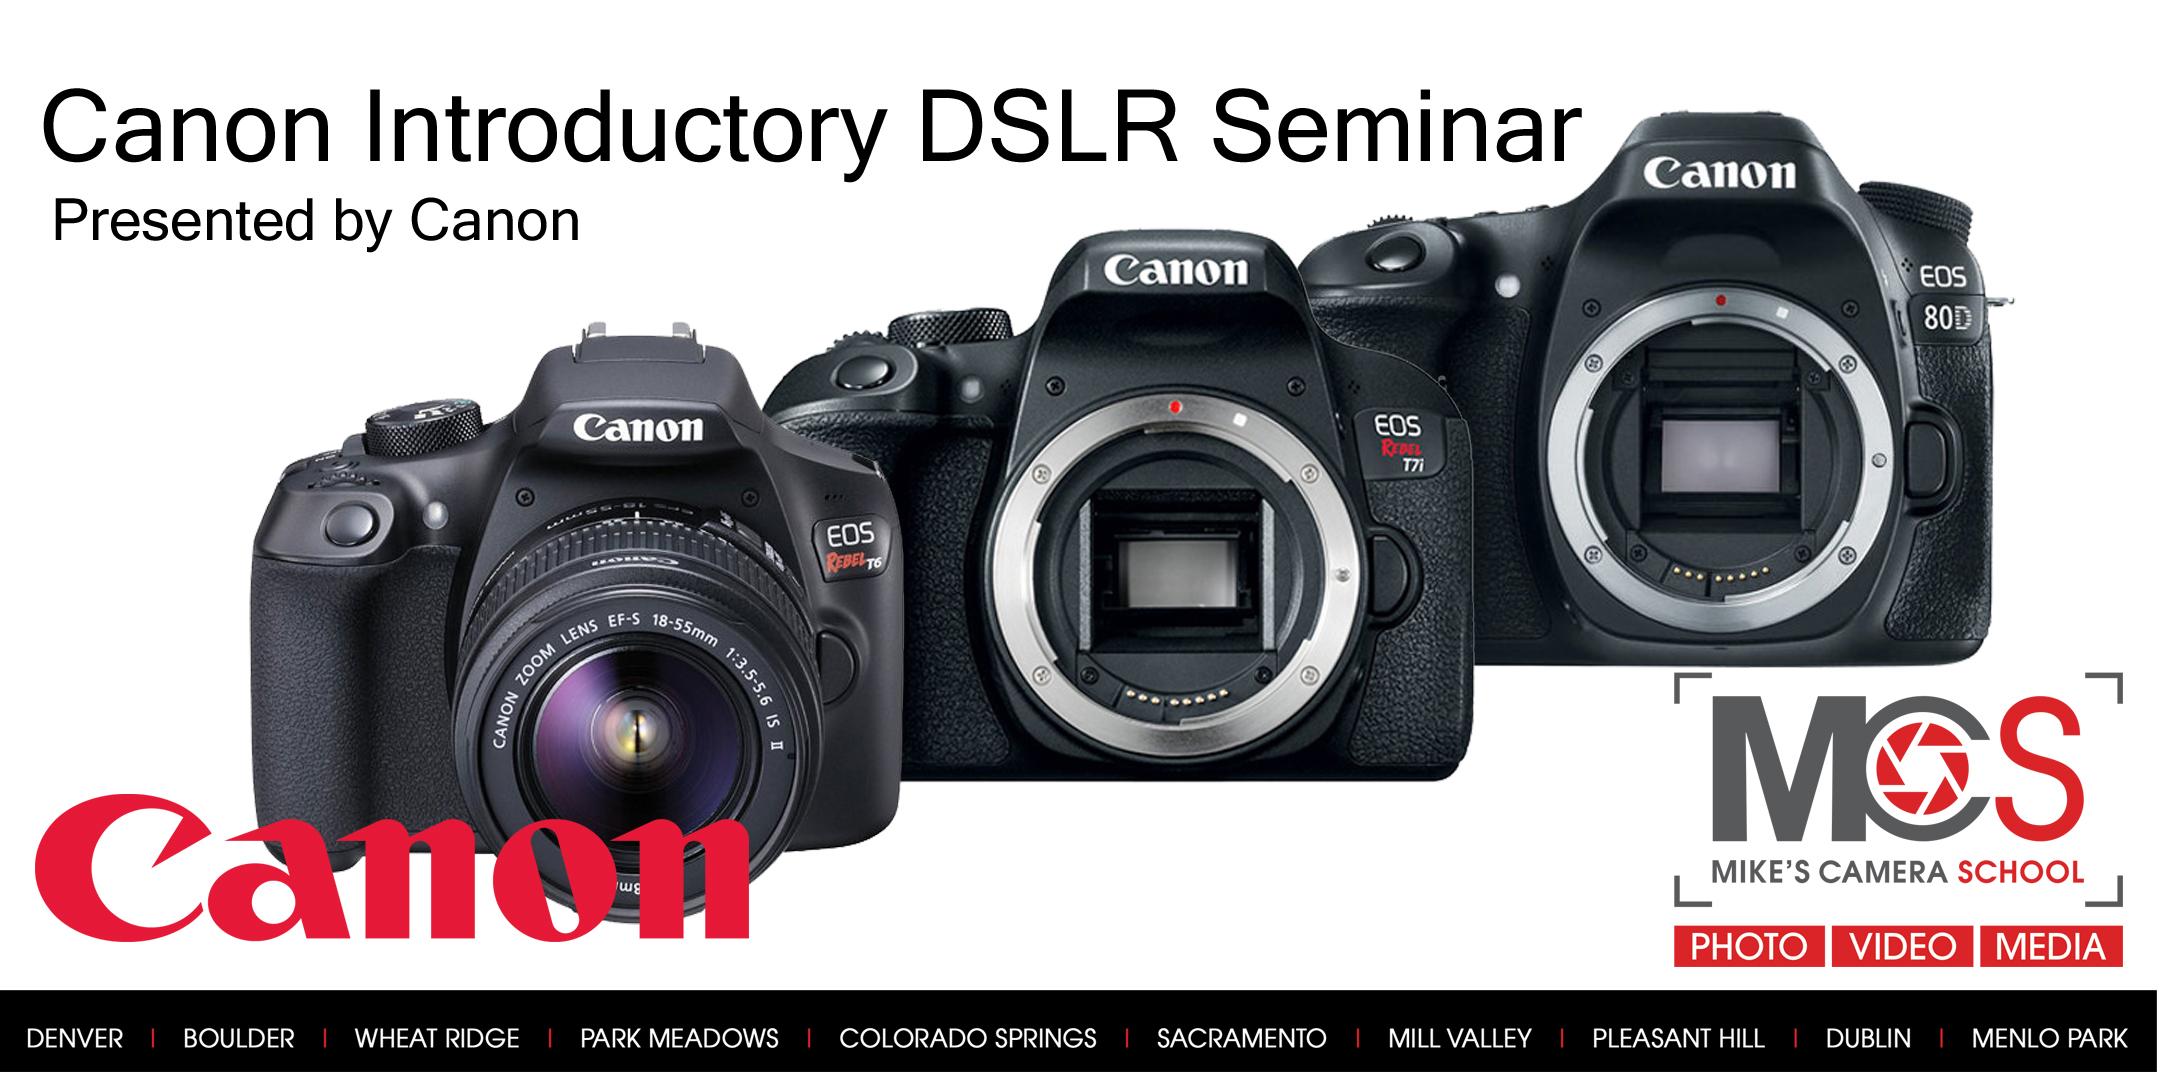 Canon EOS DSLR Camera Seminar Presented by Canon- Sacramento